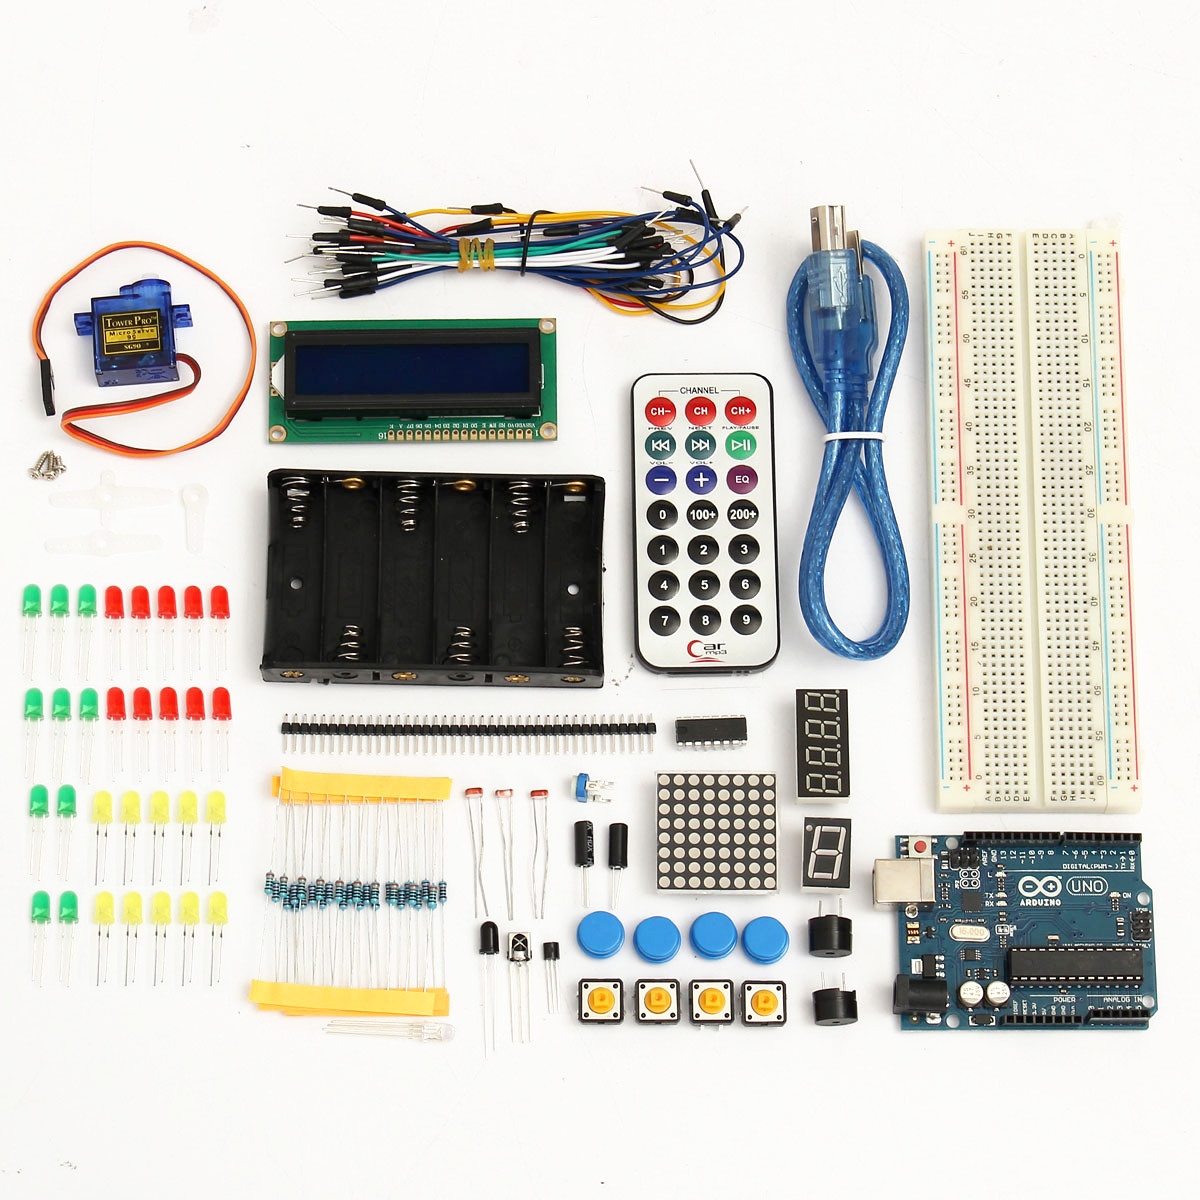 

Basic Starter Learning Kit UNO R3 1602LCD Sensor Breadboard For Arduino